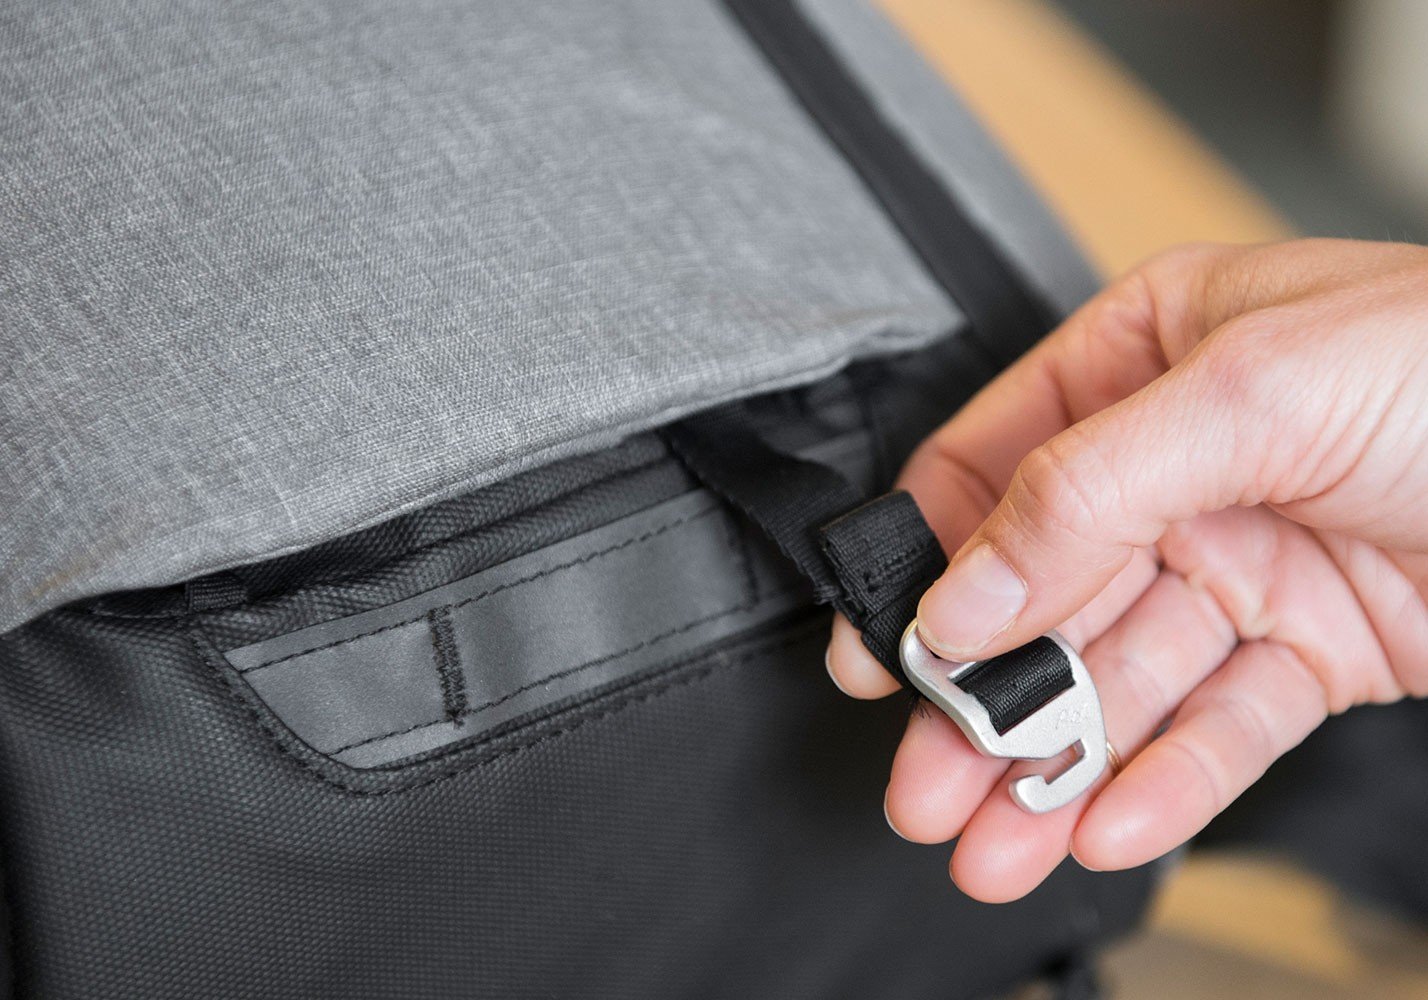 PEAK DESIGN - Everyday Backpack 30L - 炭灰色